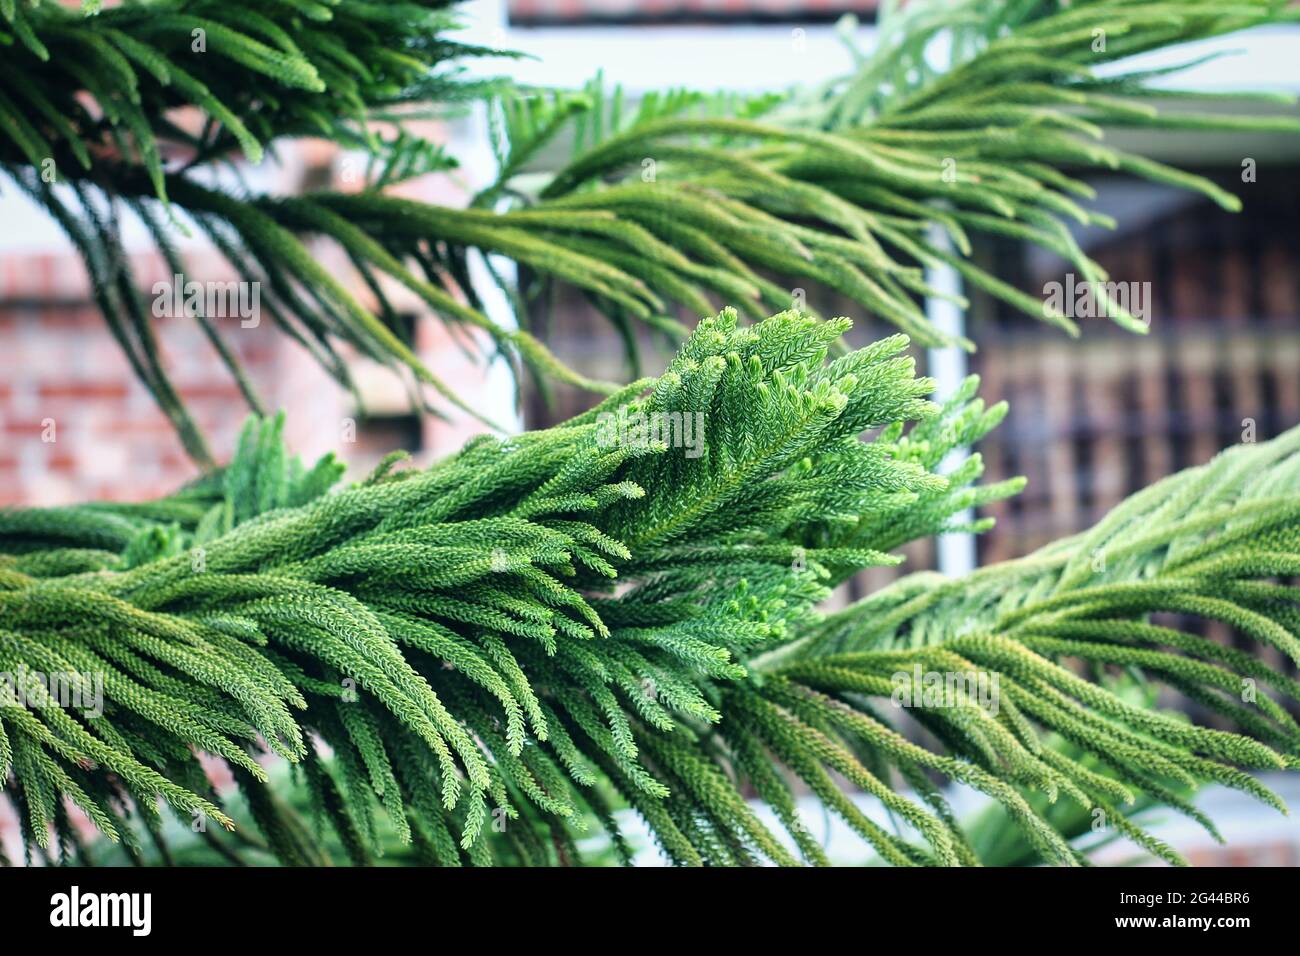 Nahaufnahme des Norfolk Island Pine Leaves Hintergrund. Schönes grünes Blattmuster von Kiefern. Stockfoto